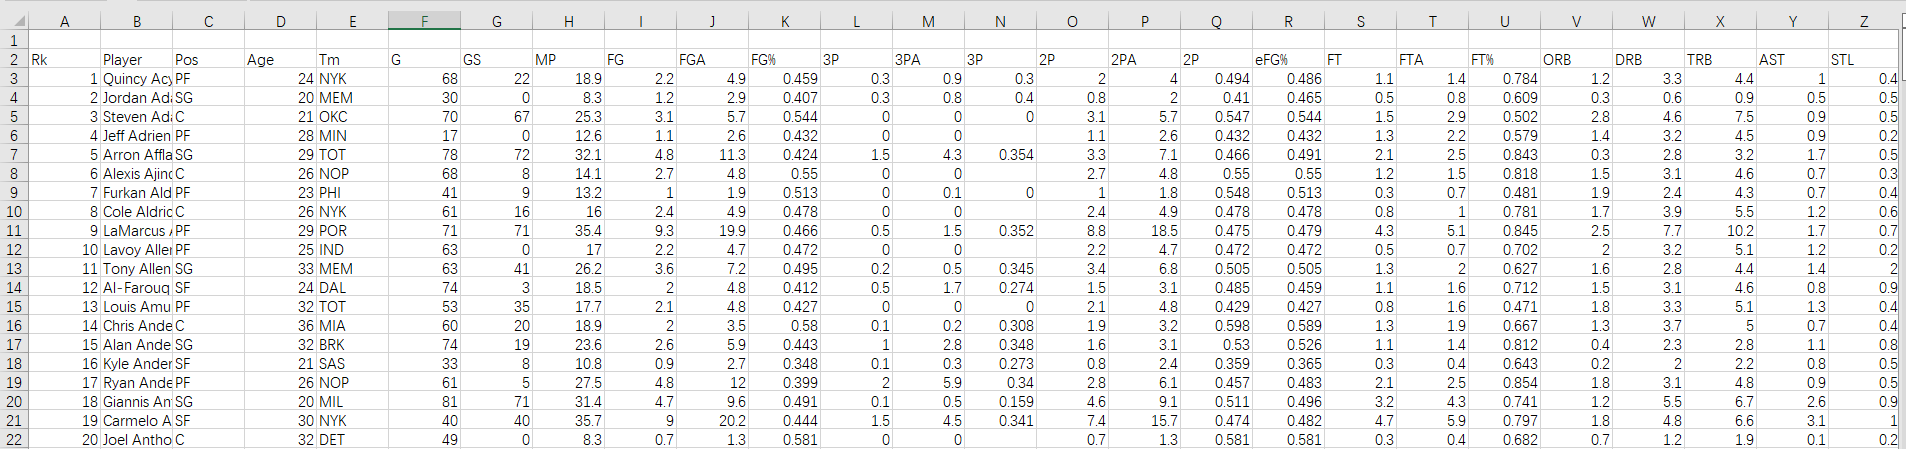 基于 Scal 语言的 Spark 数据分析案例：NBA 球员数据处理与可视化